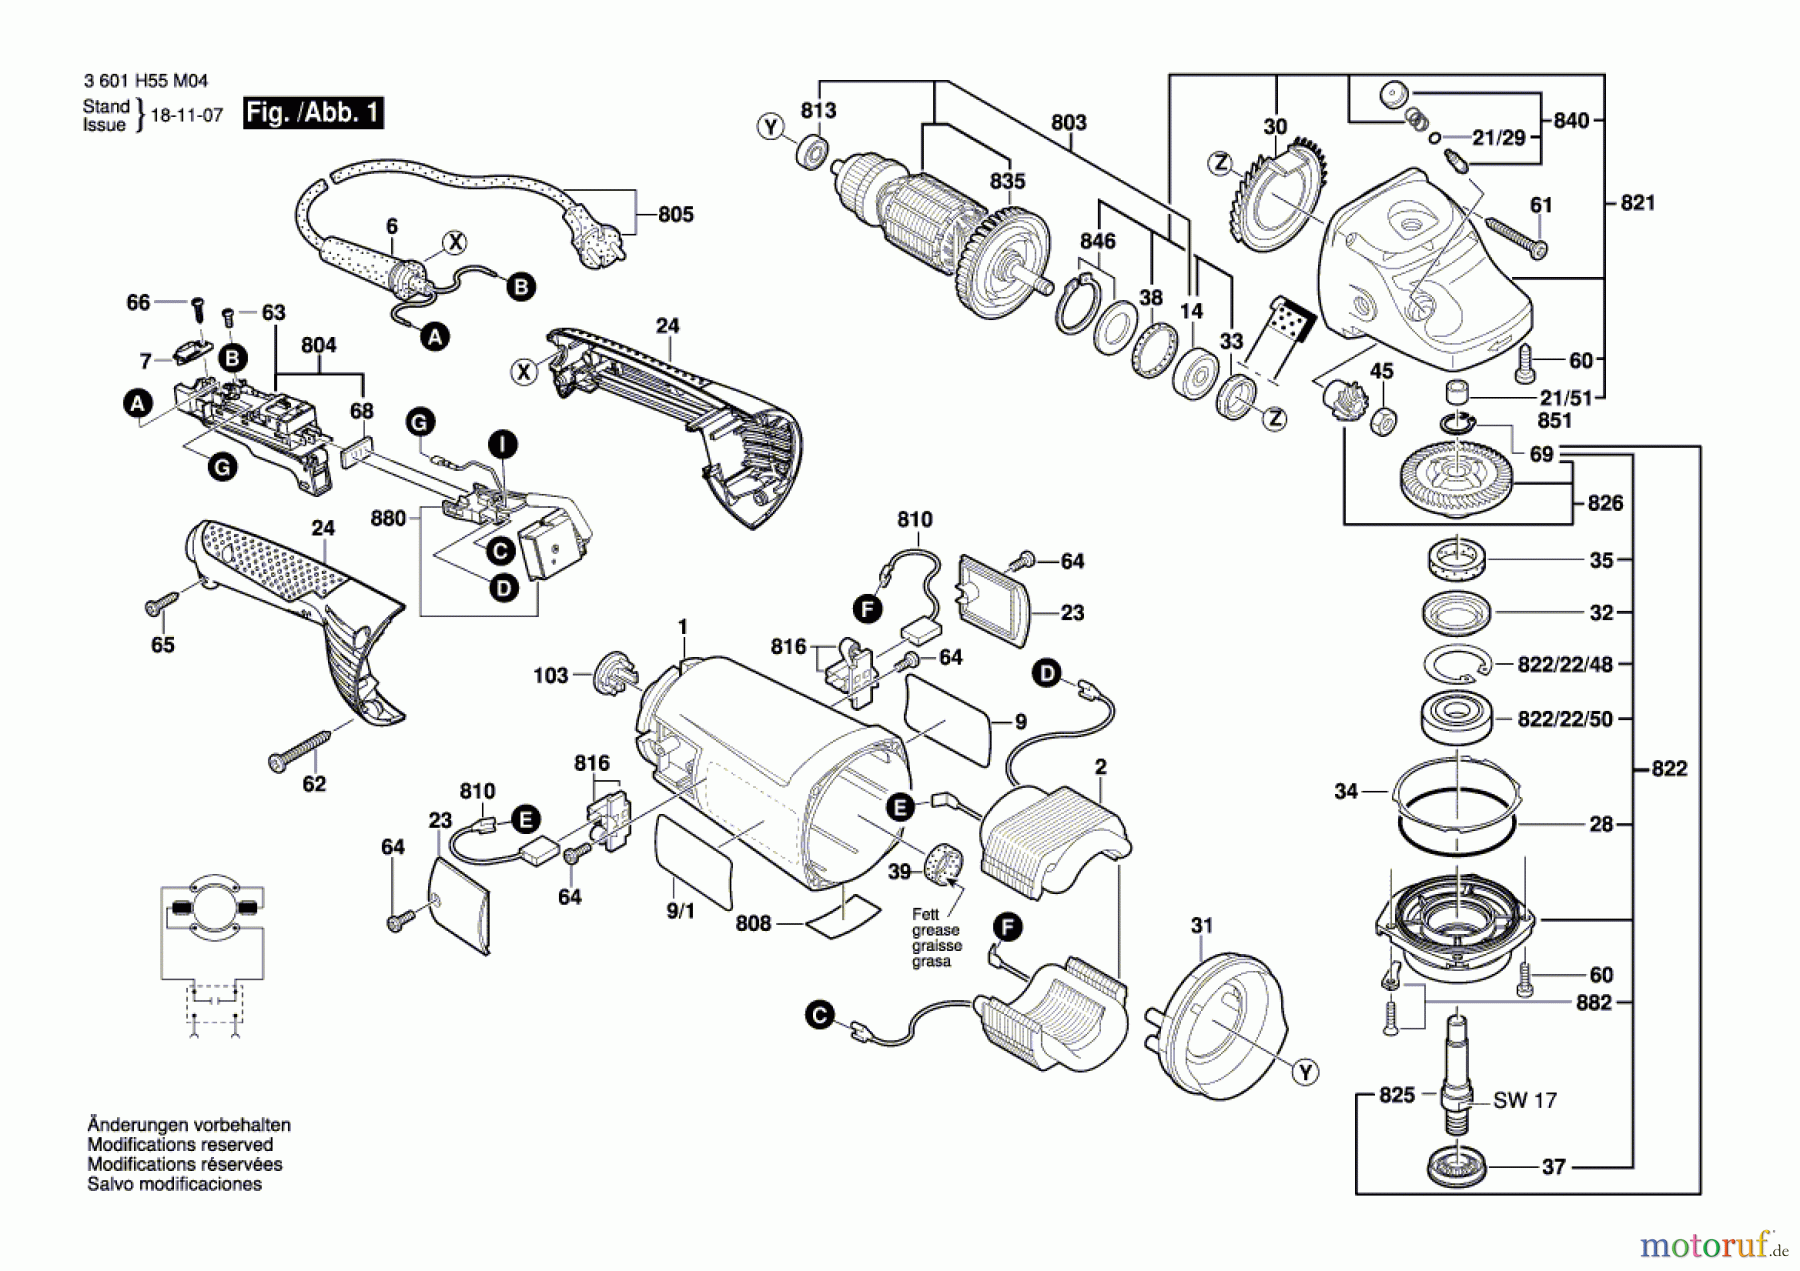  Bosch Werkzeug Winkelschleifer GWS 26-180 JH Seite 1